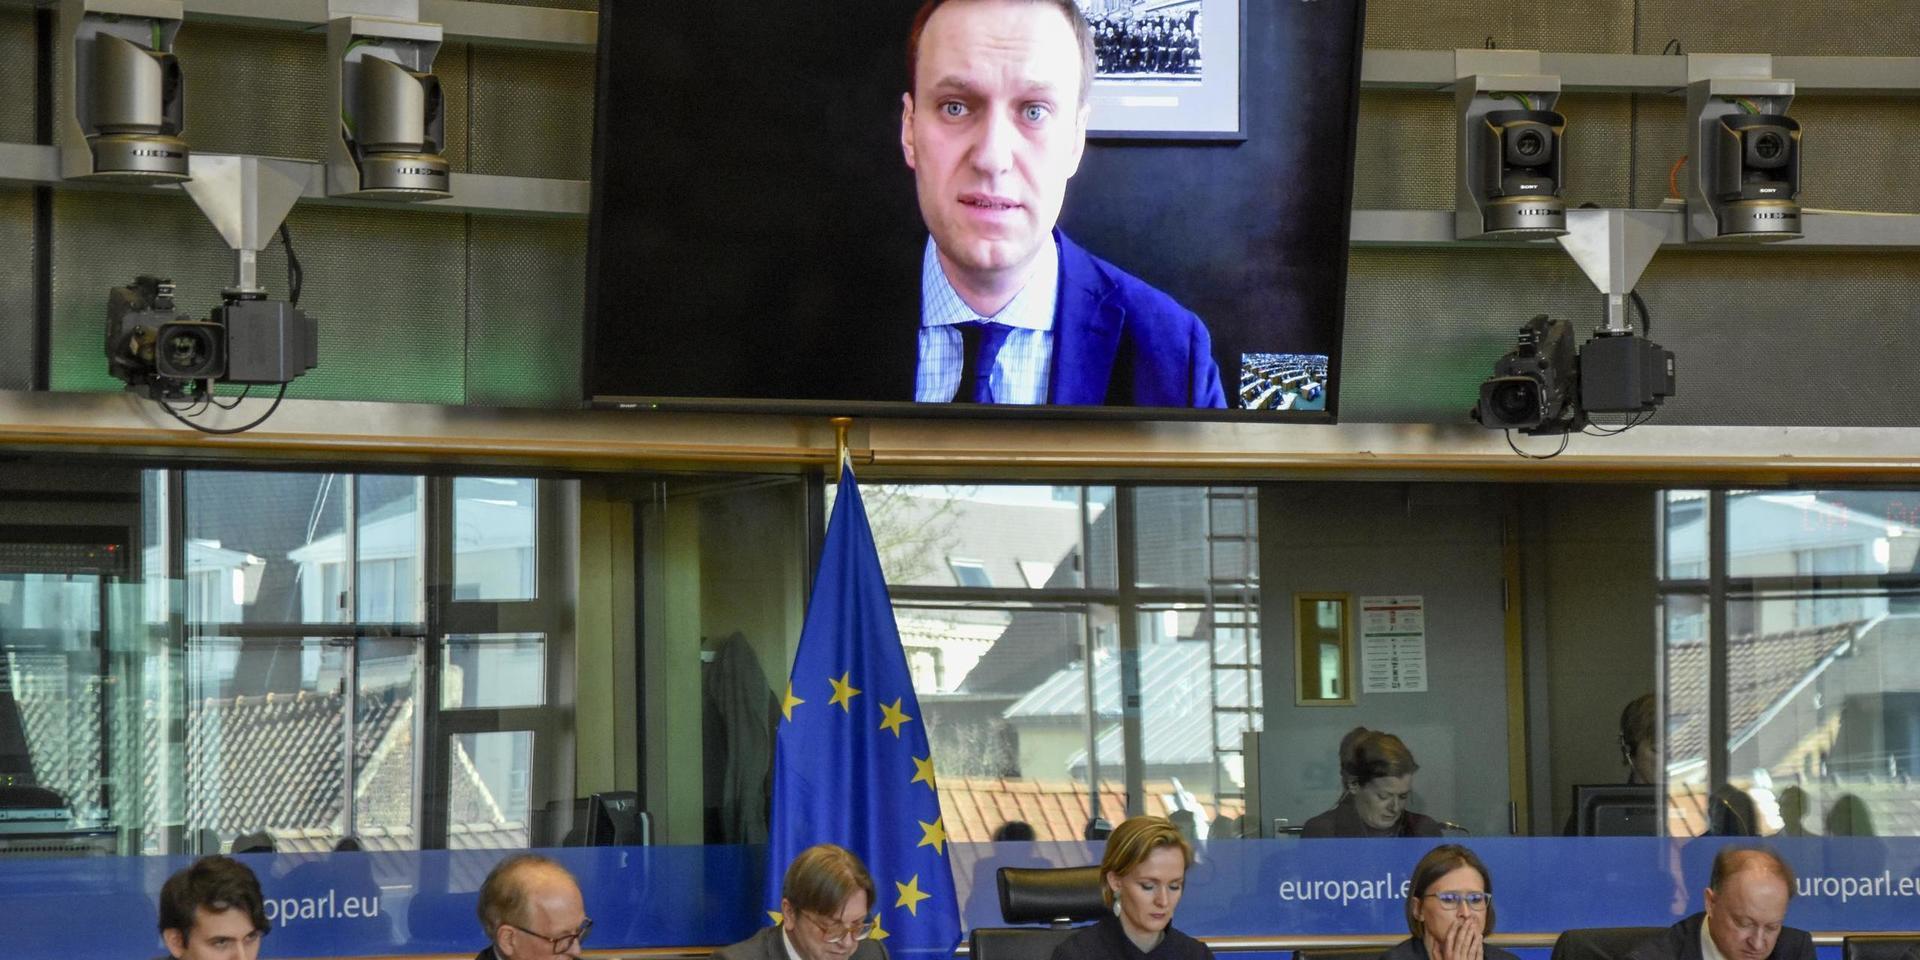 Ryske oppositionspolitikern Aleksej Navalnyj i ett framträdande via videolänk i EU-parlamentet 2018. Arkivbild.